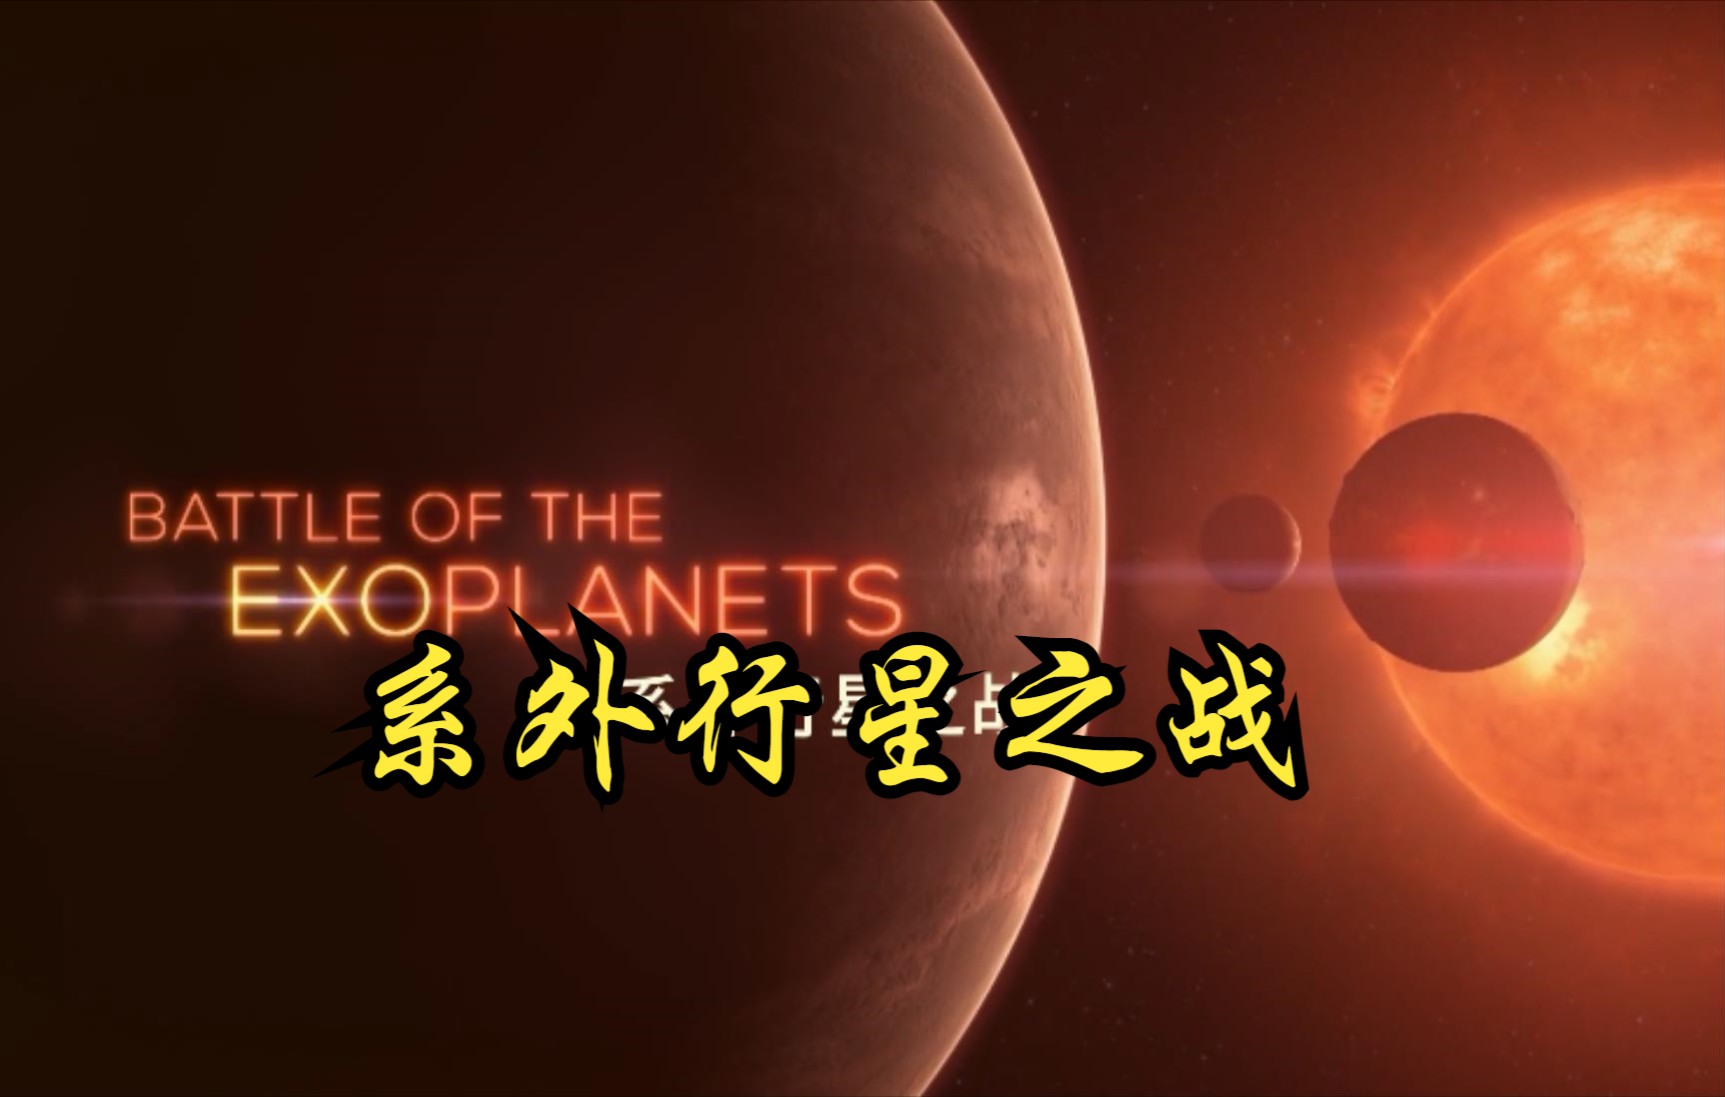 【英国】【纪录片】系外行星之战 Exoplanet war